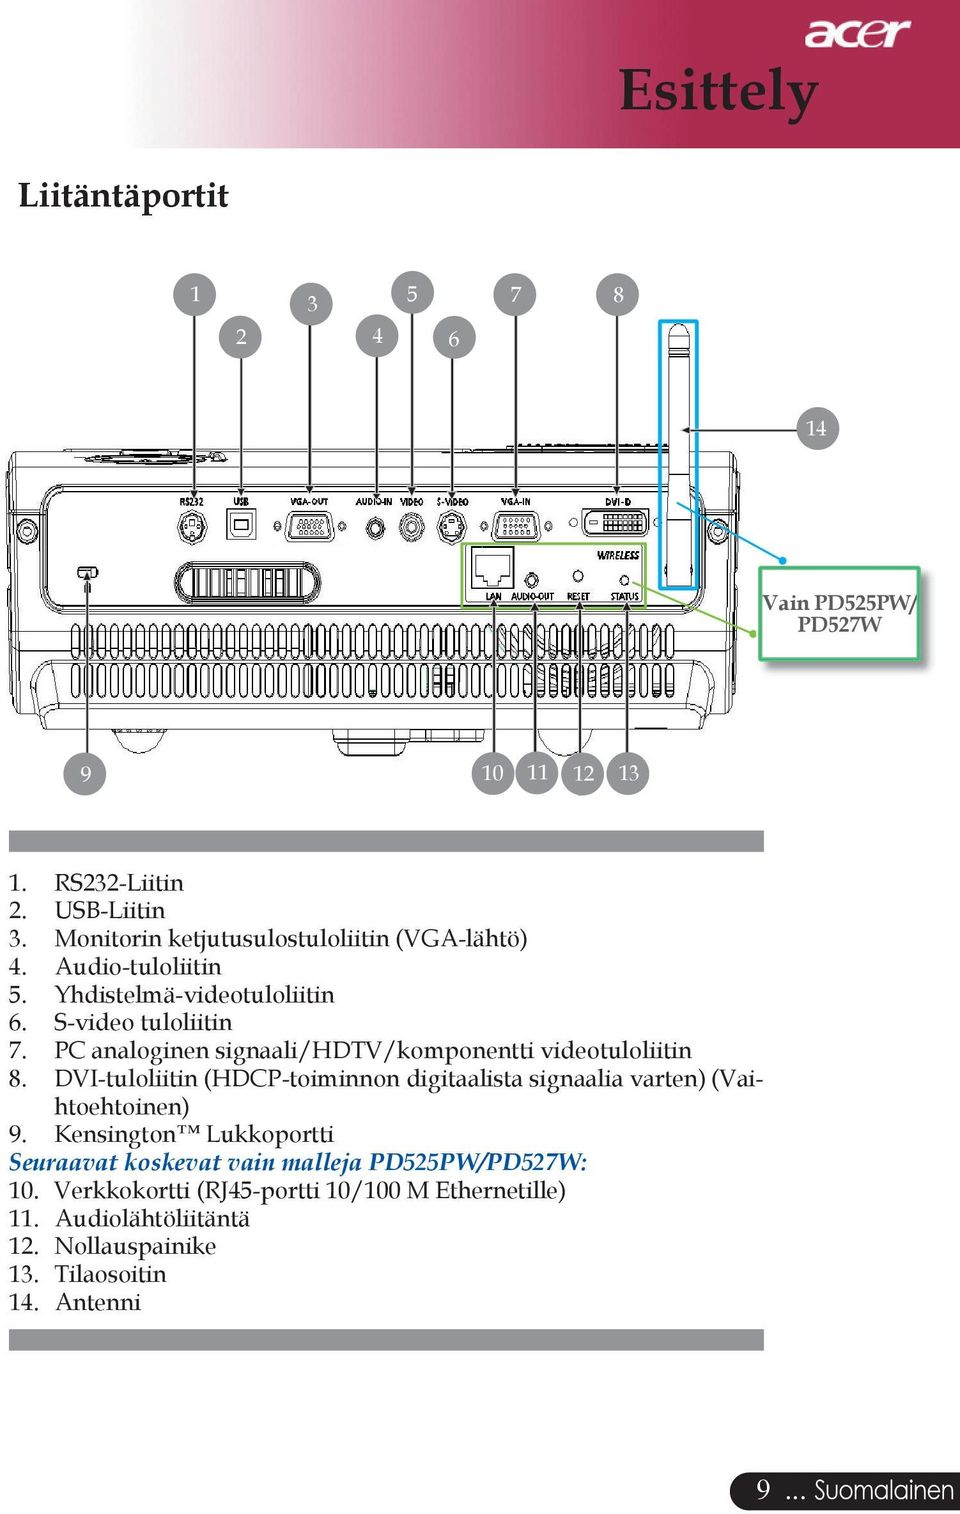 PC analoginen signaali/hdtv/komponentti videotuloliitin 8. DVI-tuloliitin (HDCP-toiminnon digitaalista signaalia varten) (Vaihtoehtoinen) 9.